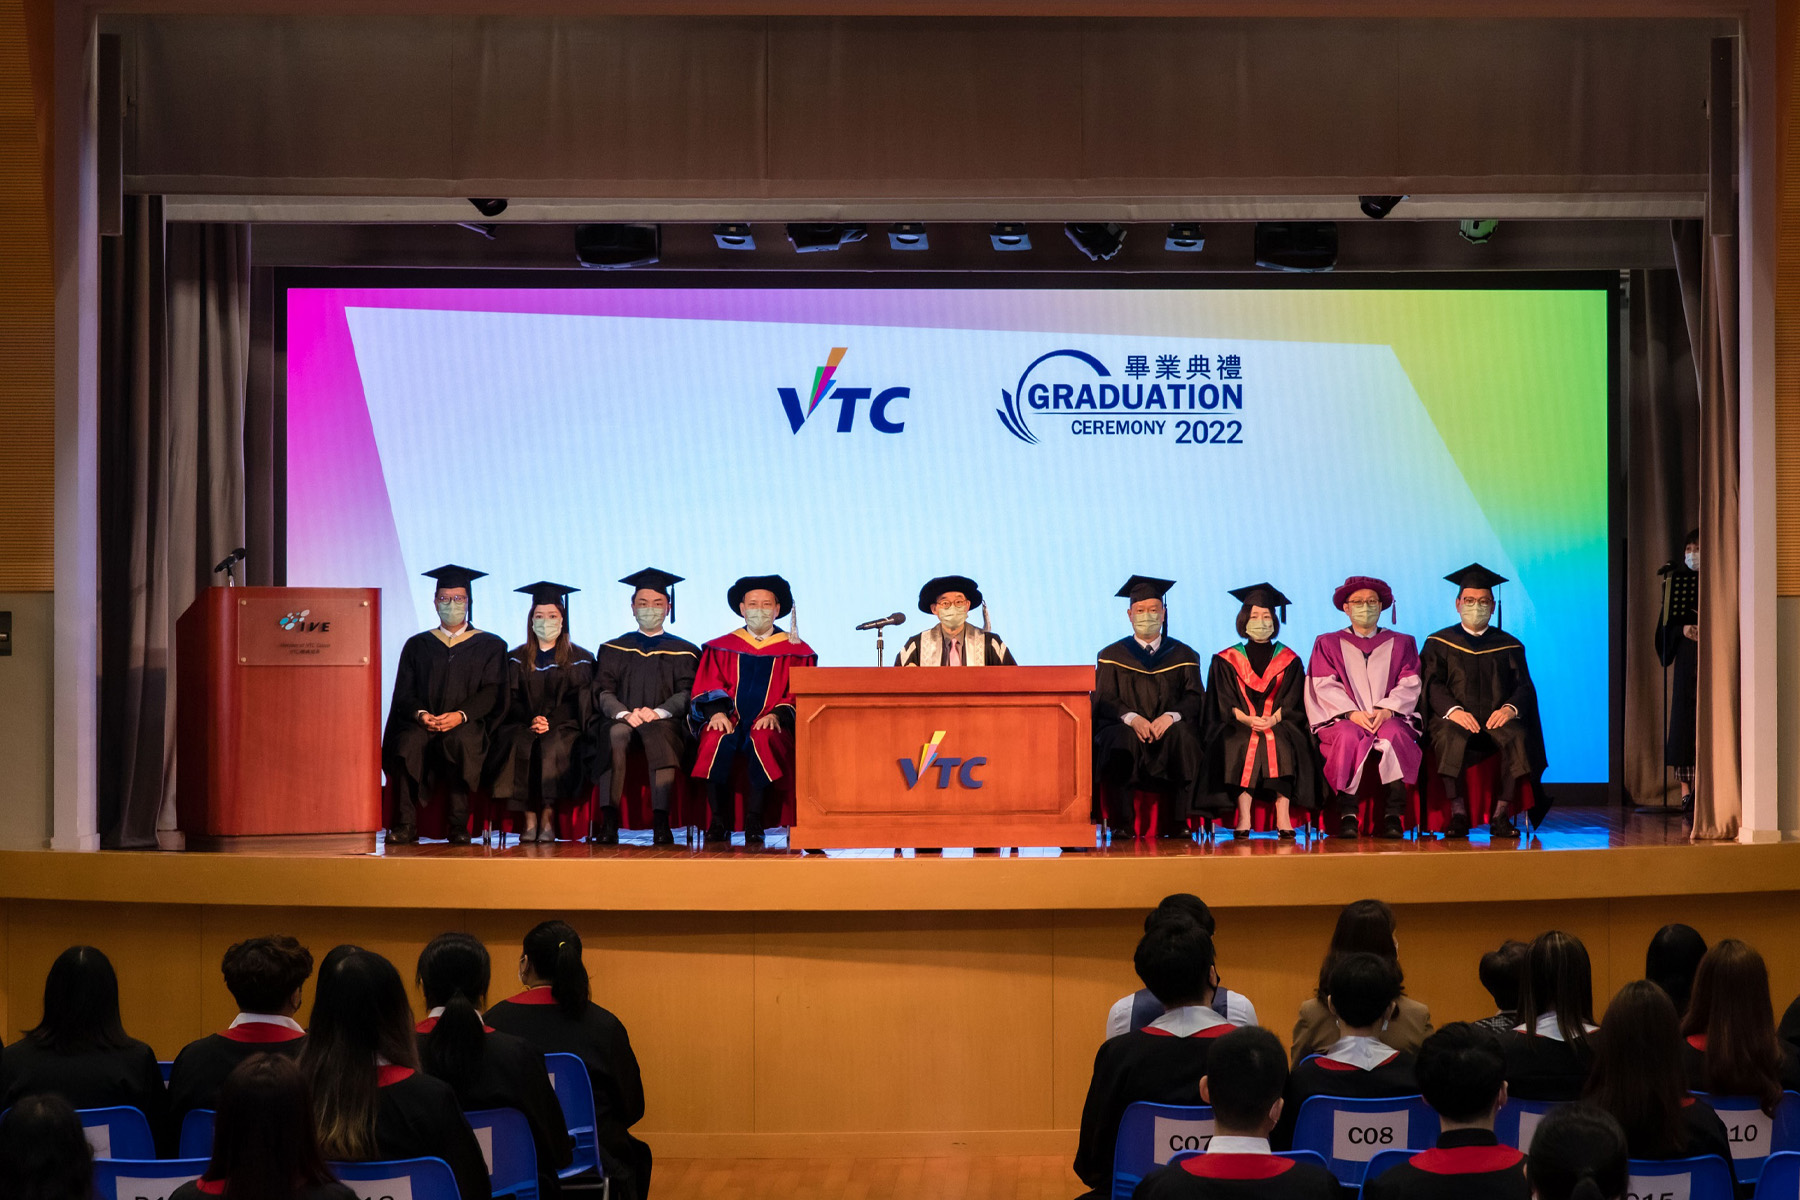 VTC院校举行毕业典礼 逾1.6万名毕业生获颁授各级资历 「伍达伦博士纪念杰出学生奖励计划」颁奖典礼同场举行